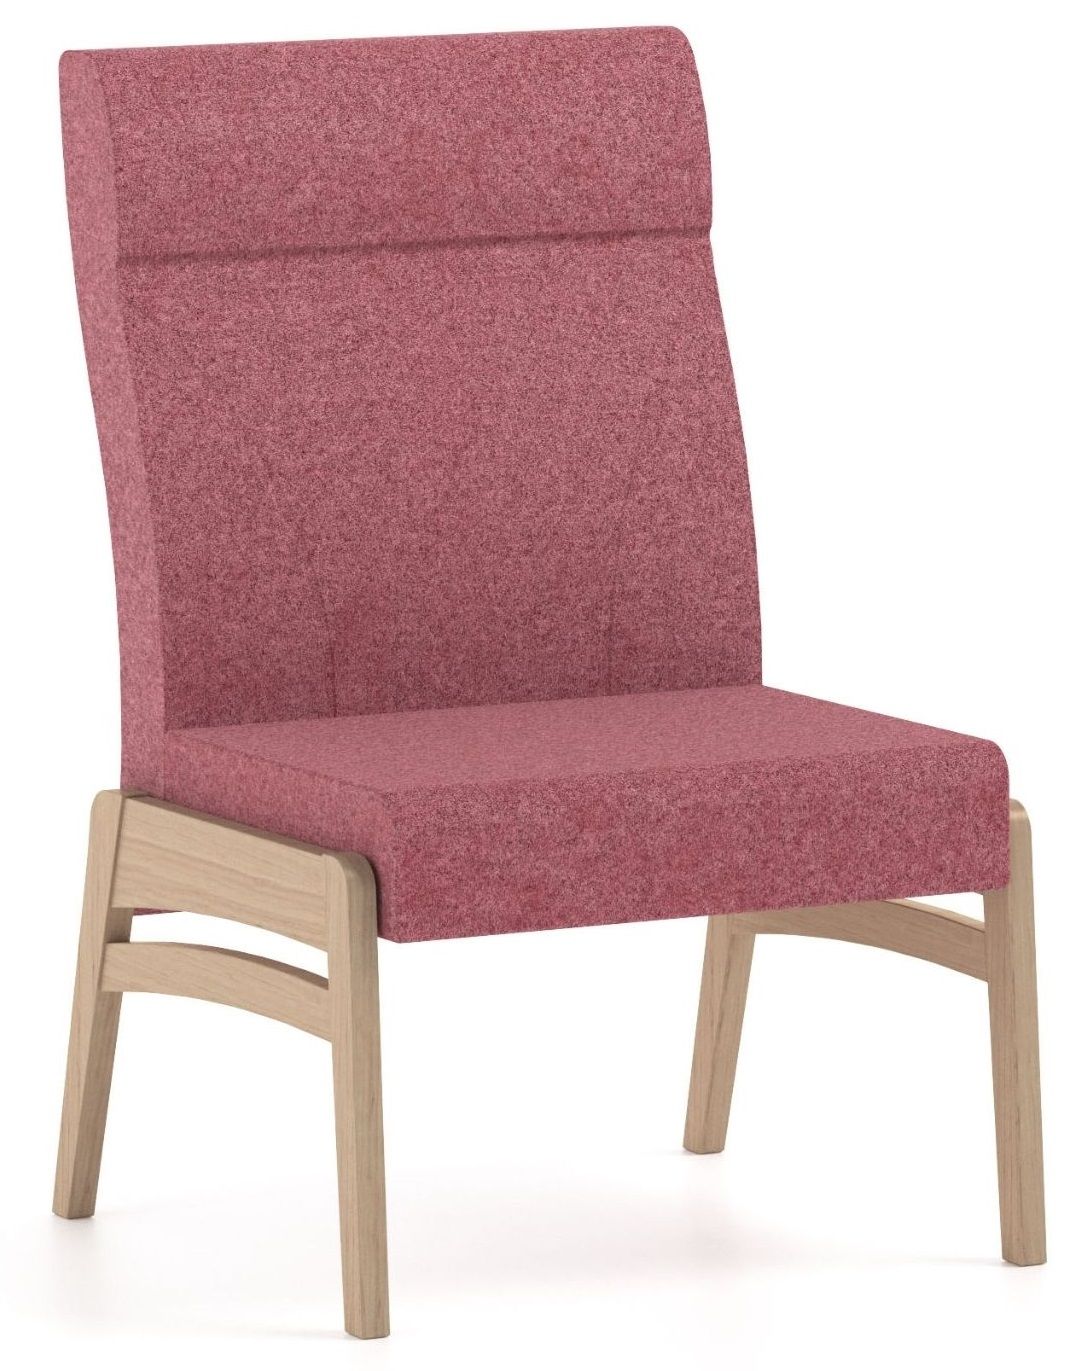 PIAVAL - Bariatrická židle FANDANGO 80-60/2 s vysokou nosností - 